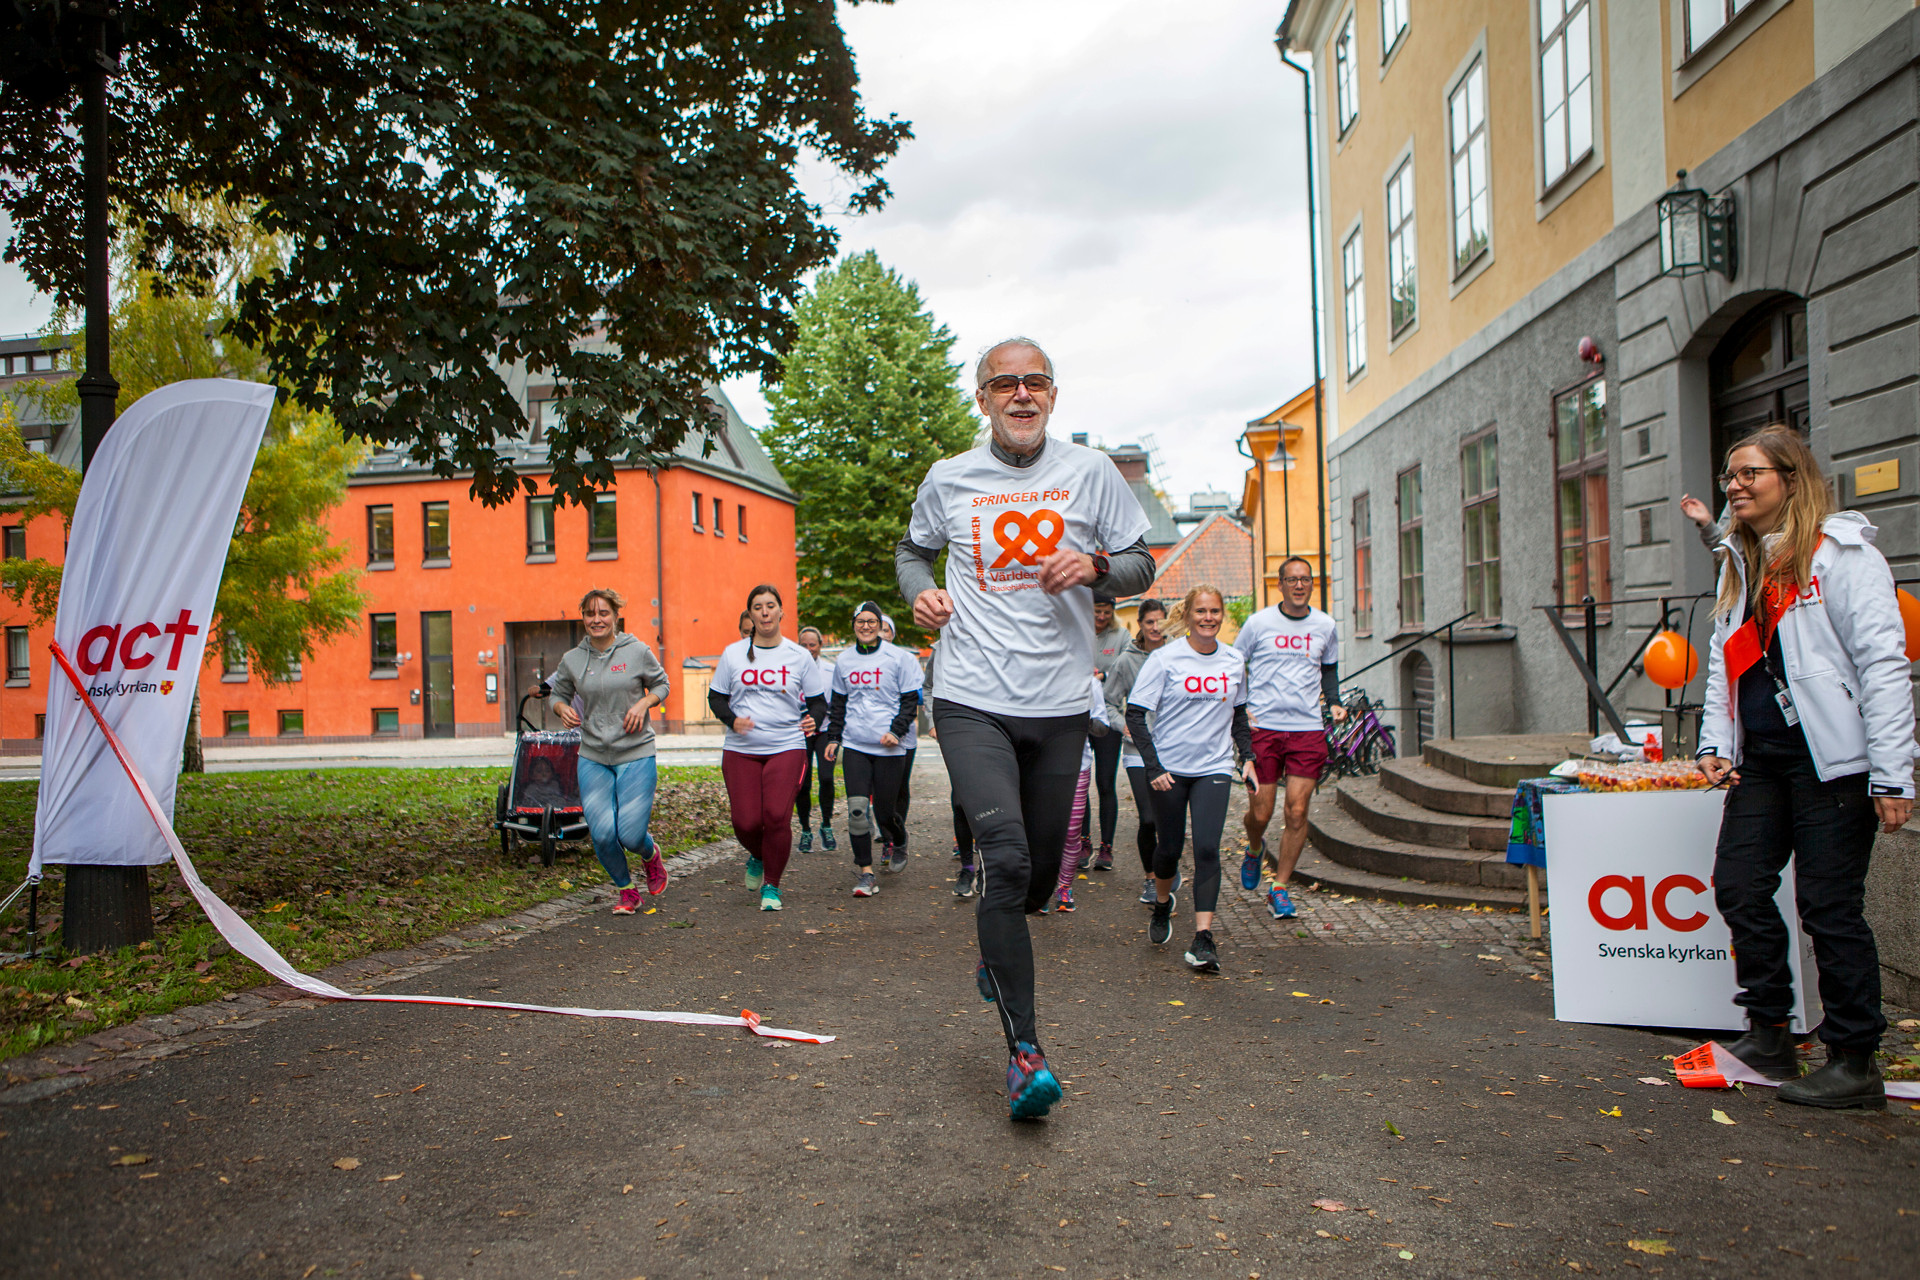 Grupp människor springer mot kameran. De bär tröjor med Act Svenska kyrkans logga på.